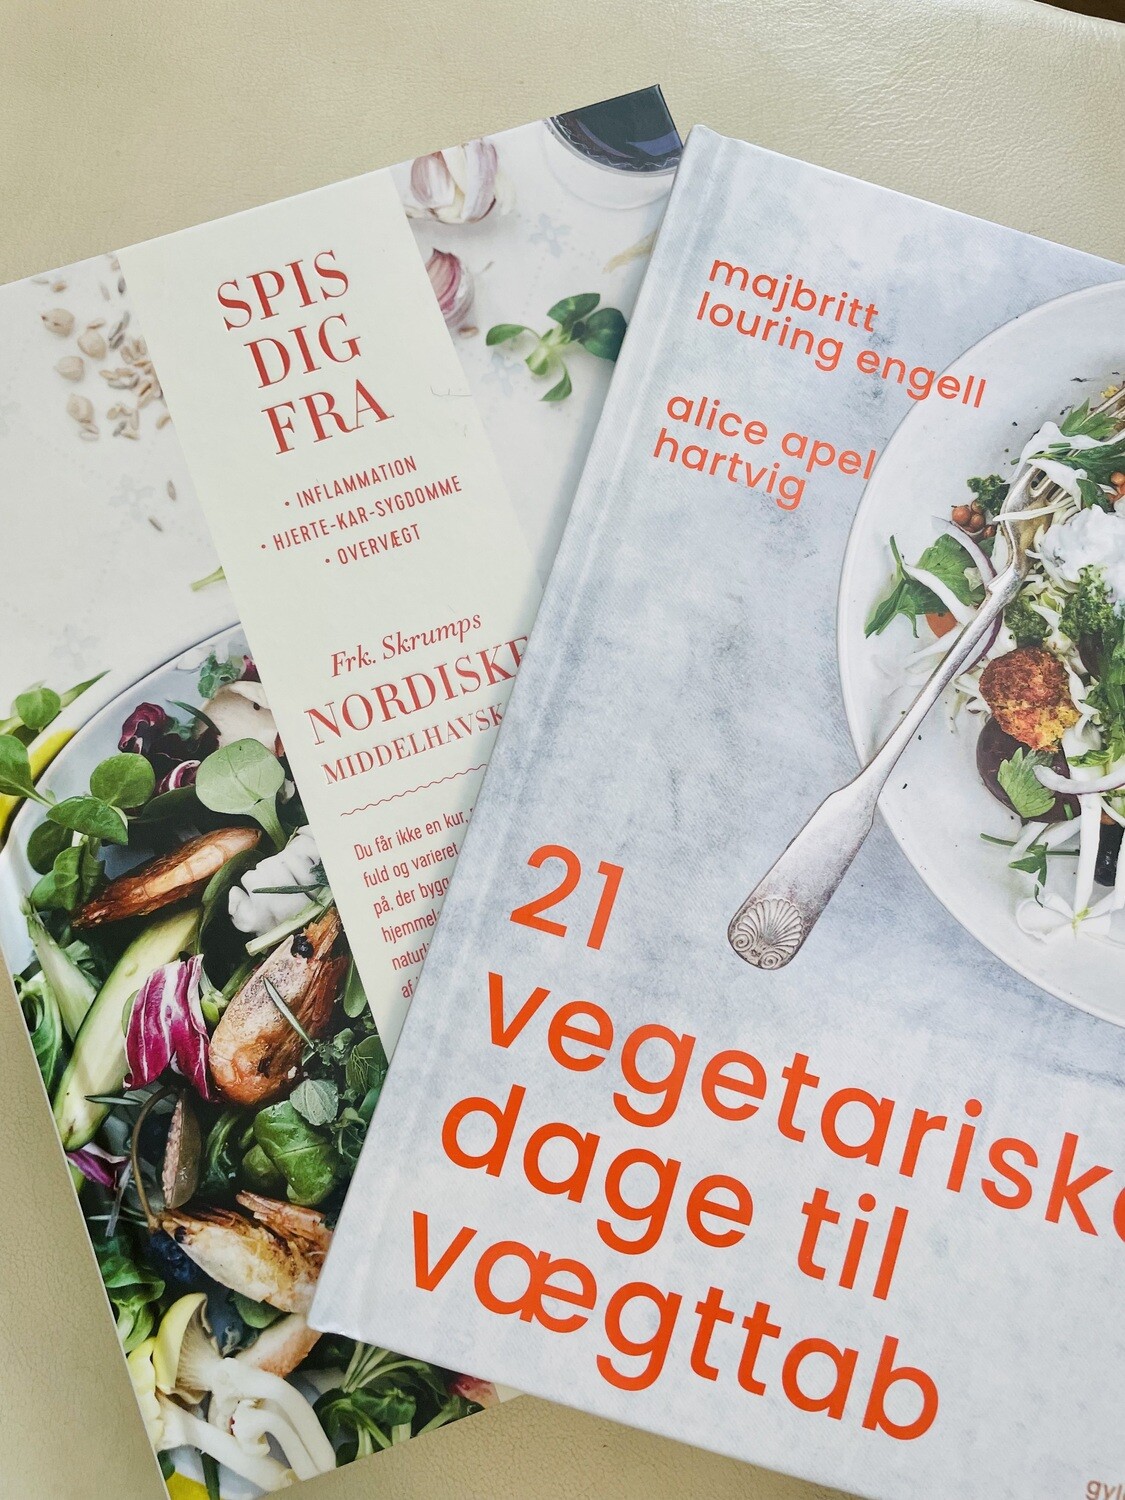 Bogpakke: 21 Vegetariske dage til vægttab i kombi med Nordisk Middelhavskost